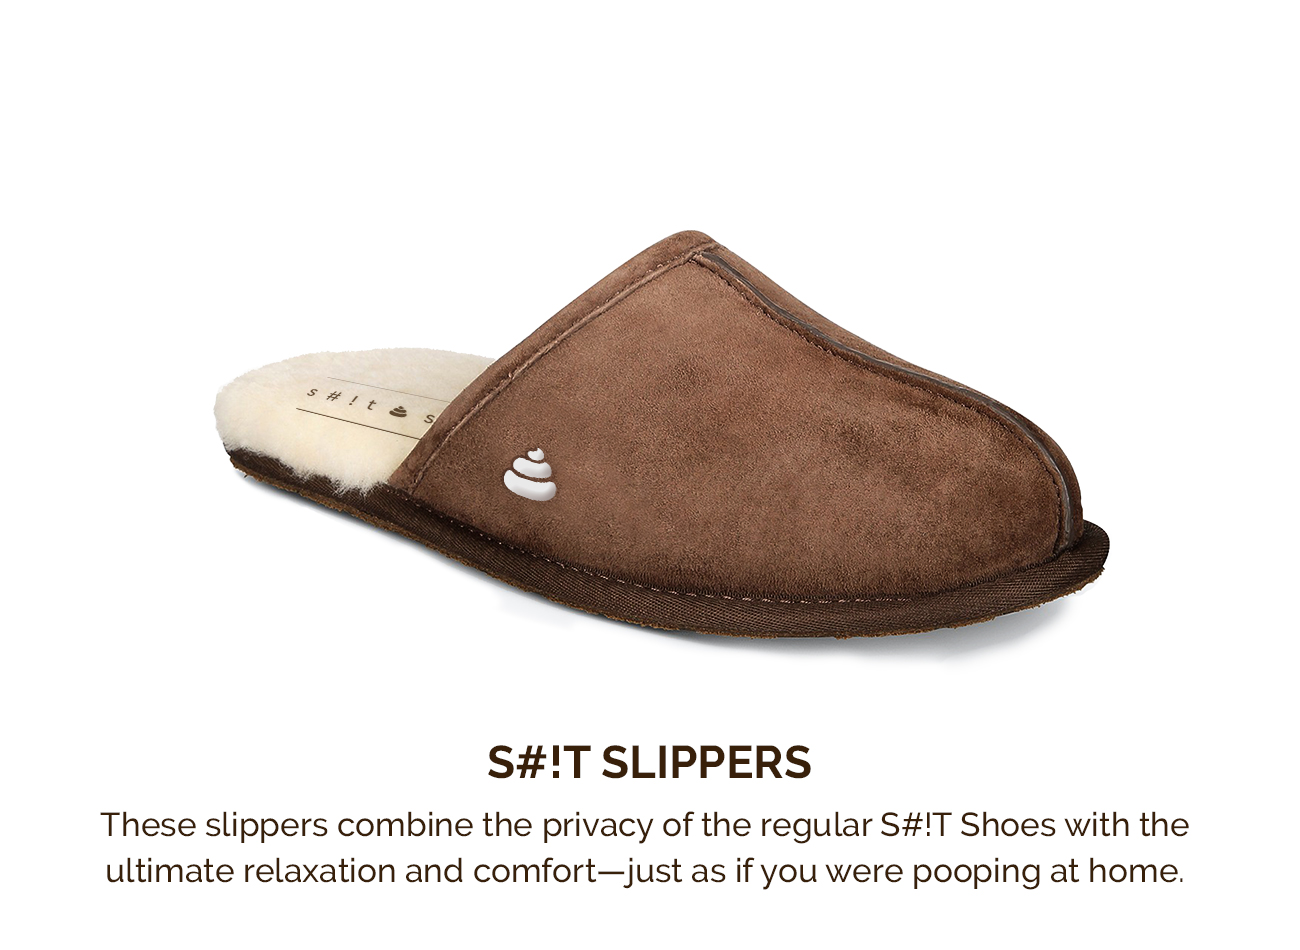 slippers-white-text.jpg